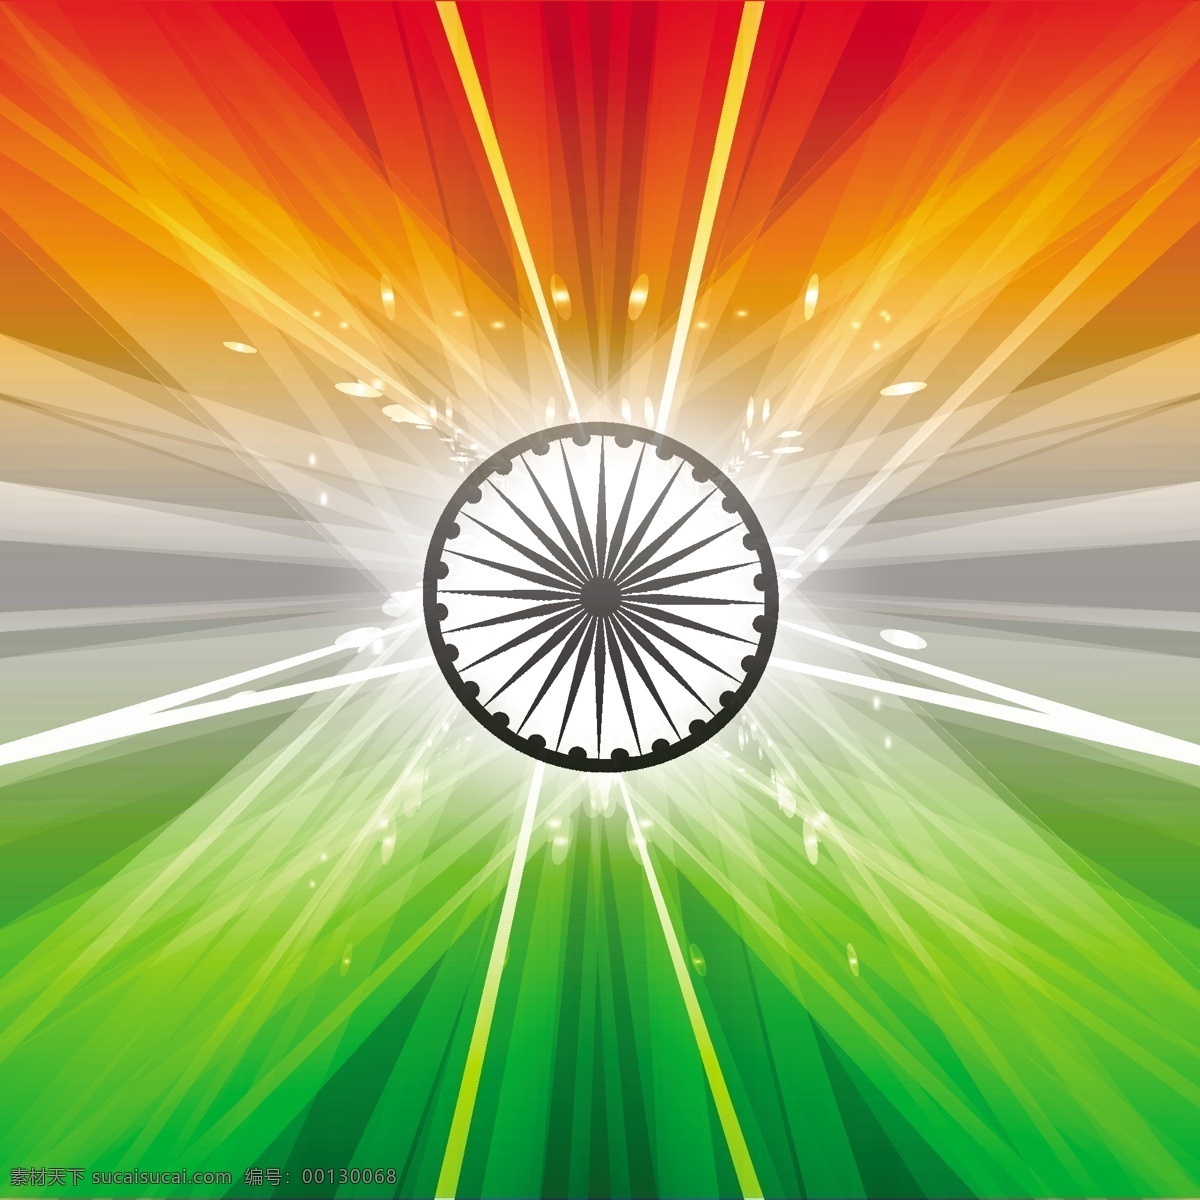 美丽 印度 国旗 背景 抽象 节日 车轮 和平 印度国旗 独立日 国家 自由 一天 政府 波浪 爱国 一月 独立 绿色